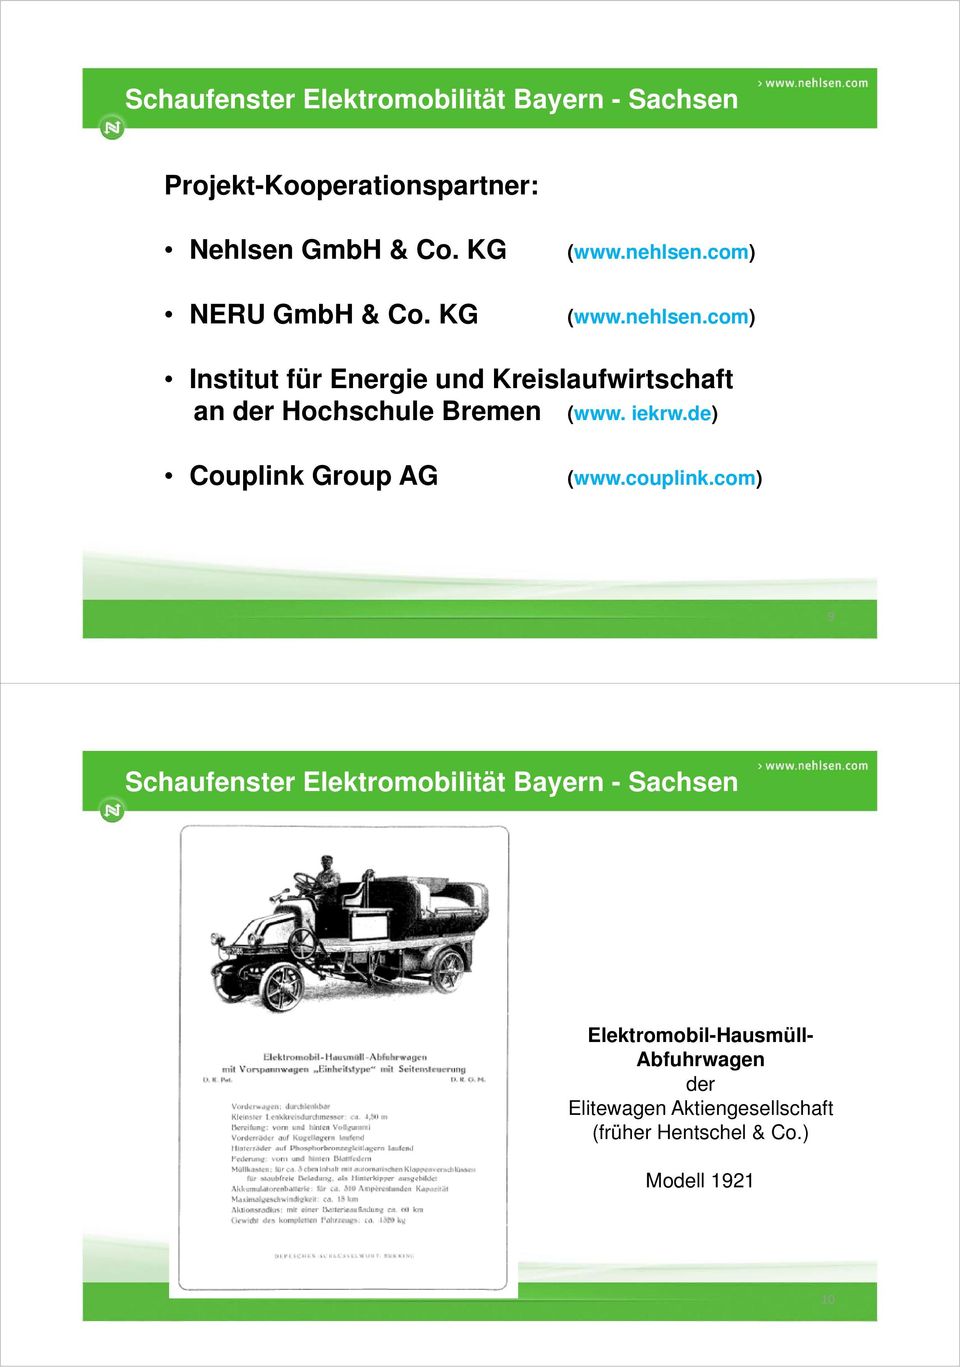 com) Institut für Energie und Kreislaufwirtschaft an der Hochschule Bremen (www.